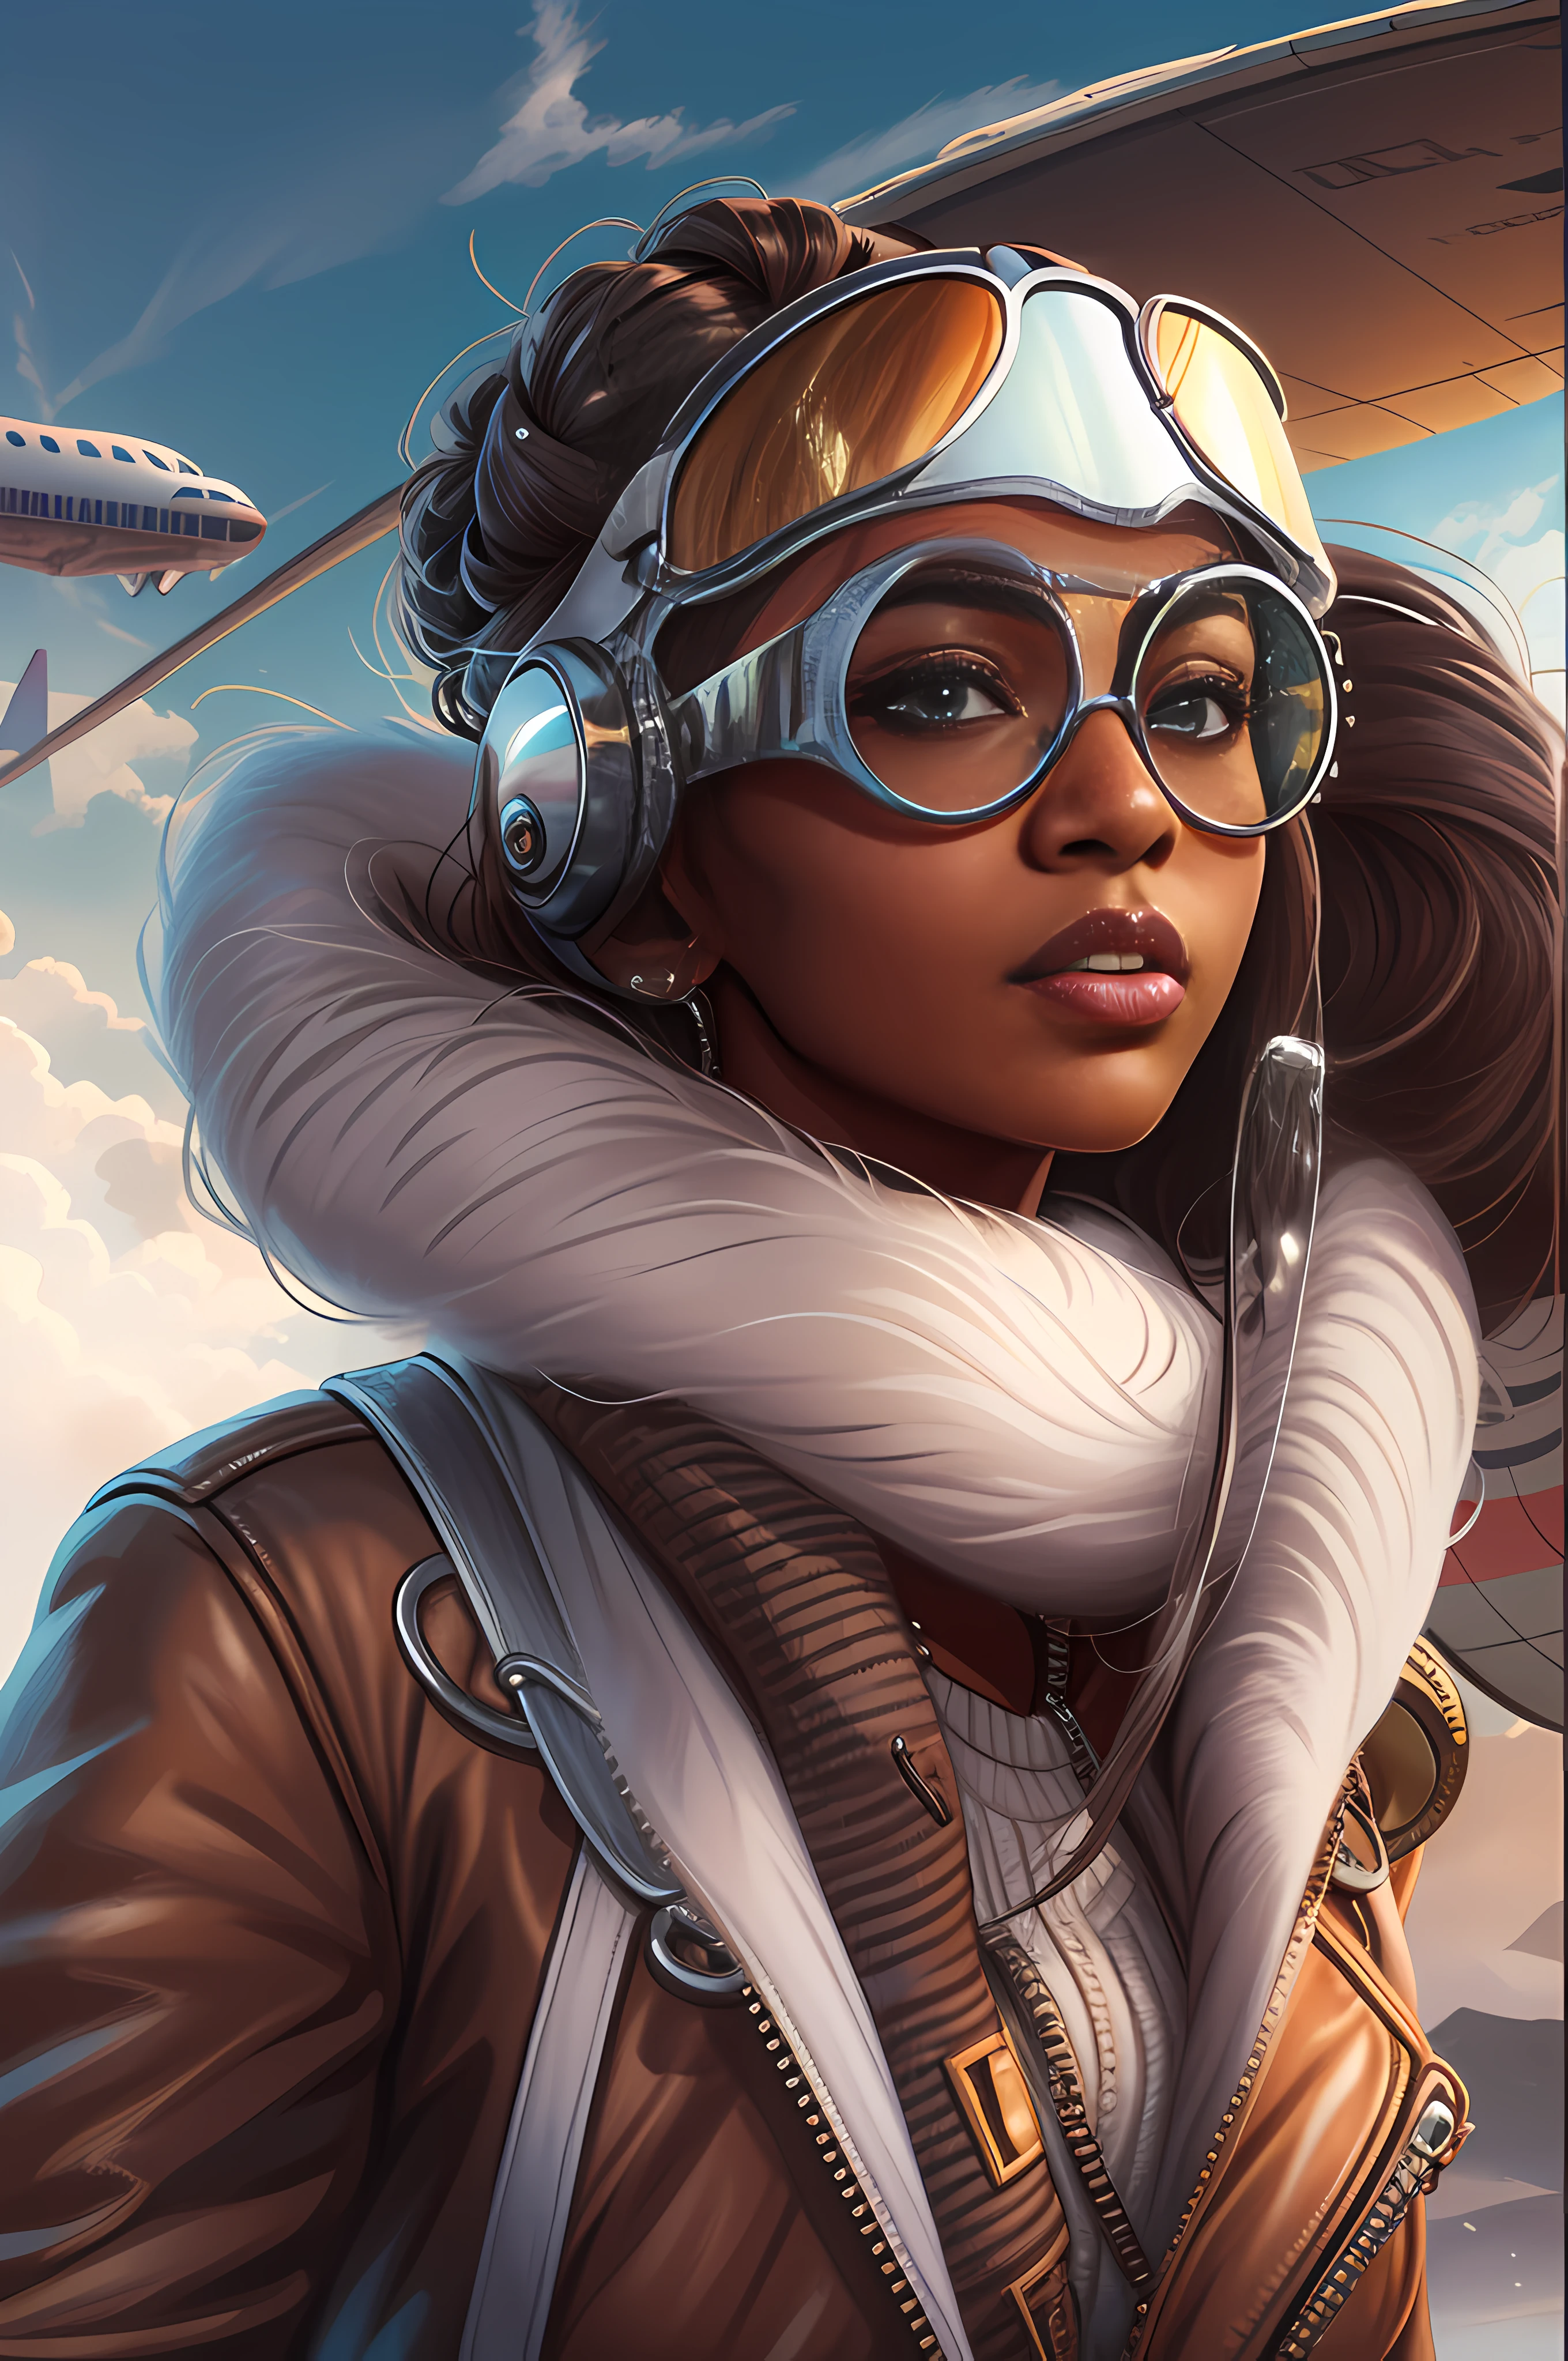 アビエーター ジャケットを着た美しいアフリカ系アメリカ人女性, 飛行機の隣に立つ白いスカーフとゴーグルを付けた飛行士のボンバーハット, デジタルペインティング, デジタルイラストレーション, 細部までこだわった, デジタルアート, 4K, ウルトラHD. 彼女の肌は深い, 濃い色で、髪は後ろにまとめられている